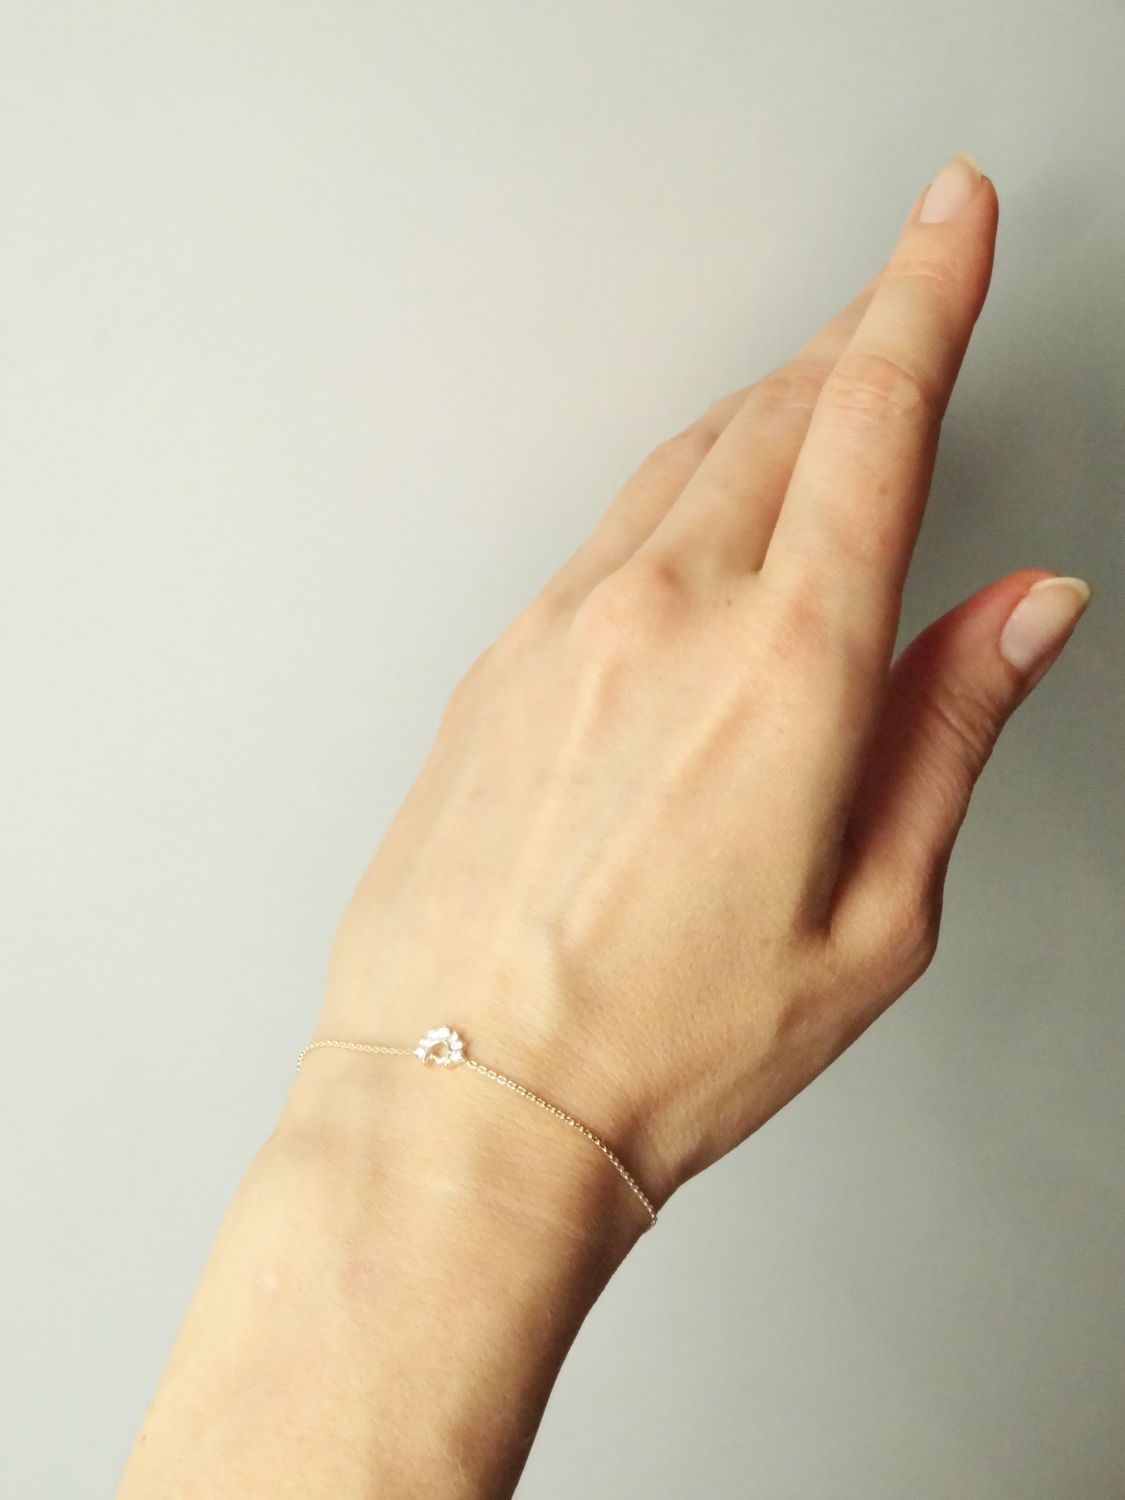 Тонкий золотой браслет цепочка с бриллиантами - Сайт авторских работHandHobby.ru